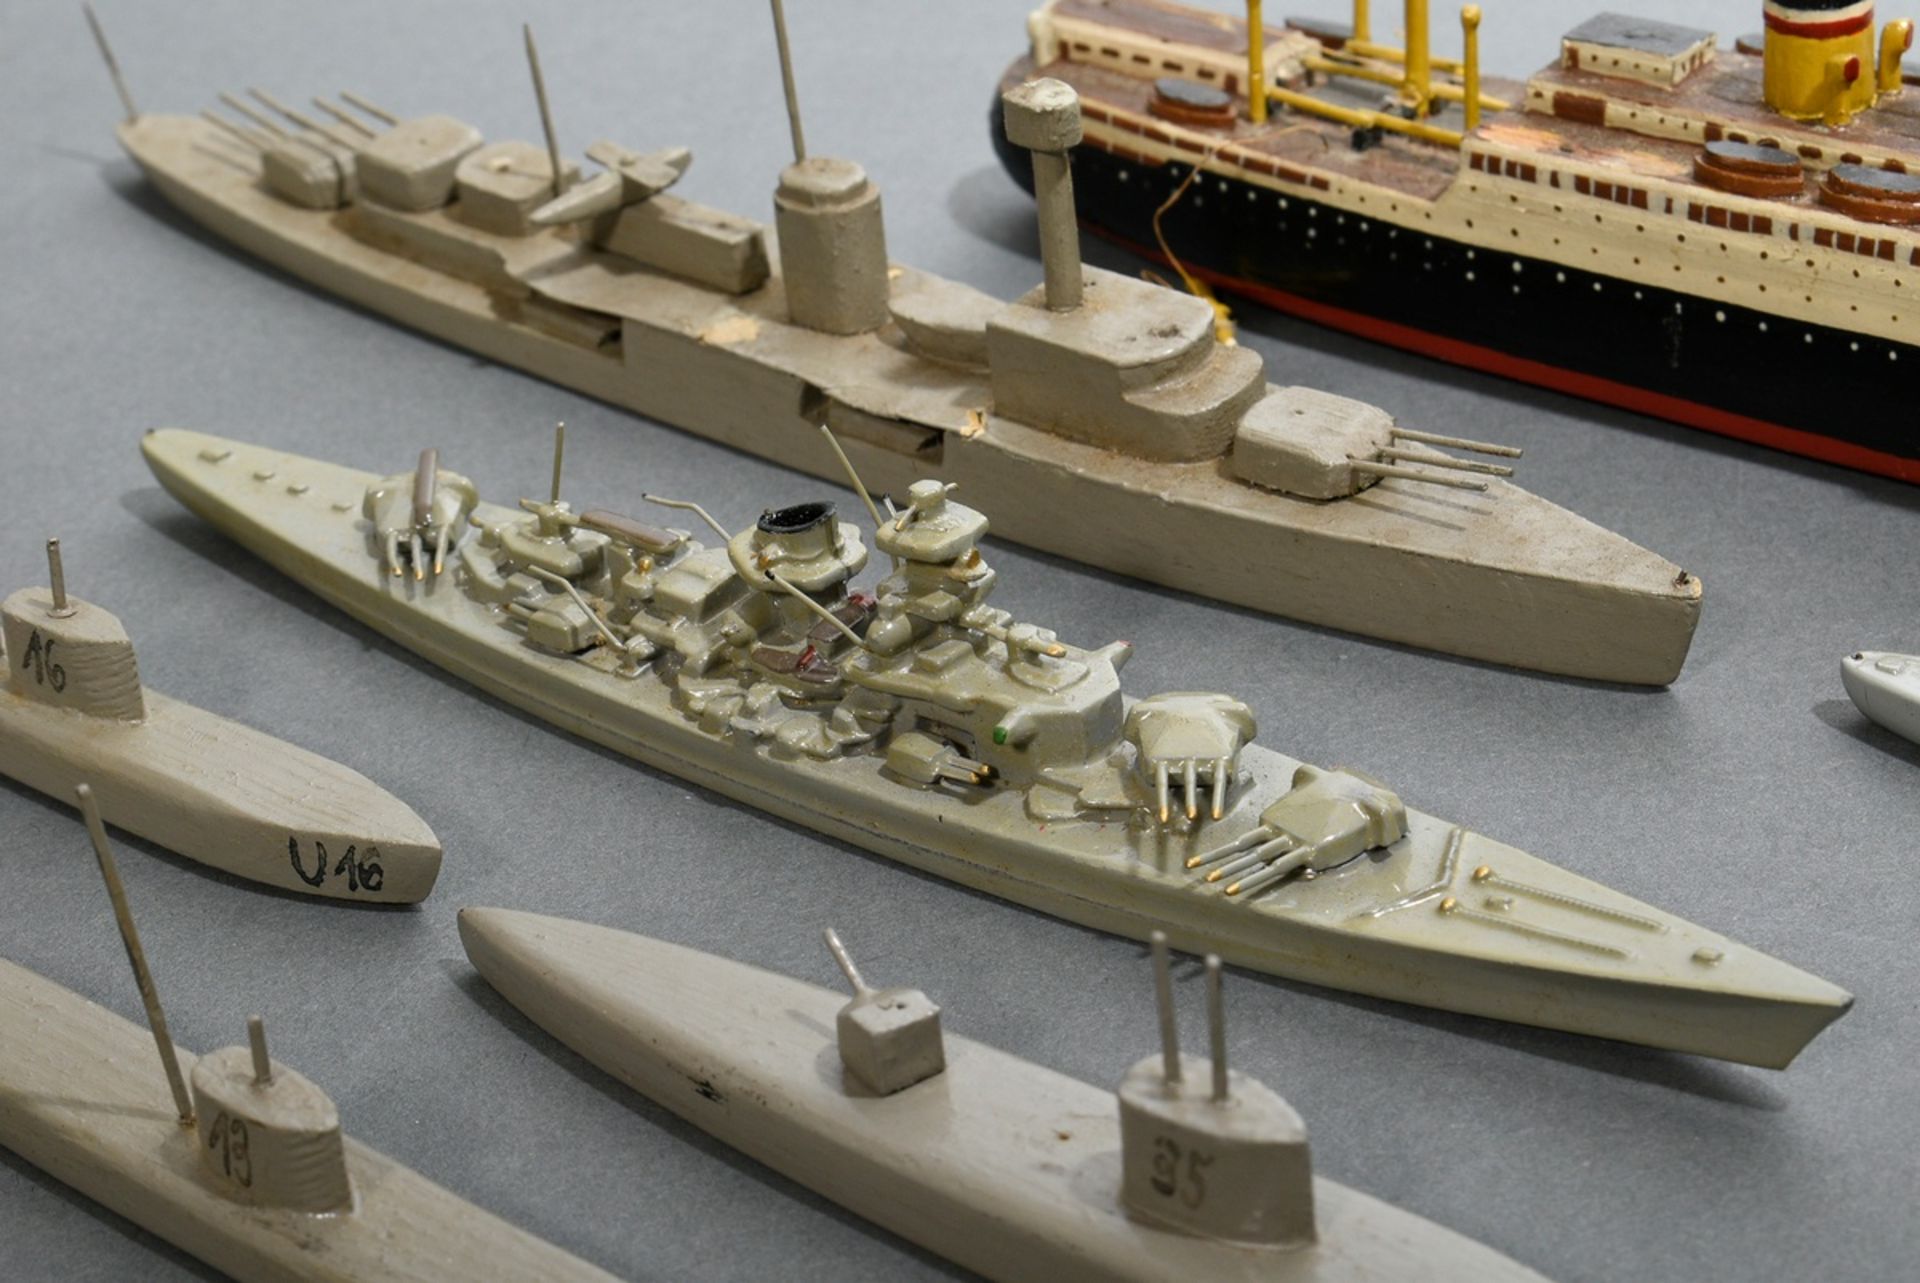 66 Wiking-Schiffsmodelle, z.T. in Originalschachtel, bestehend aus: 15 Modellboote (3x "Gneisenau S - Bild 11 aus 19